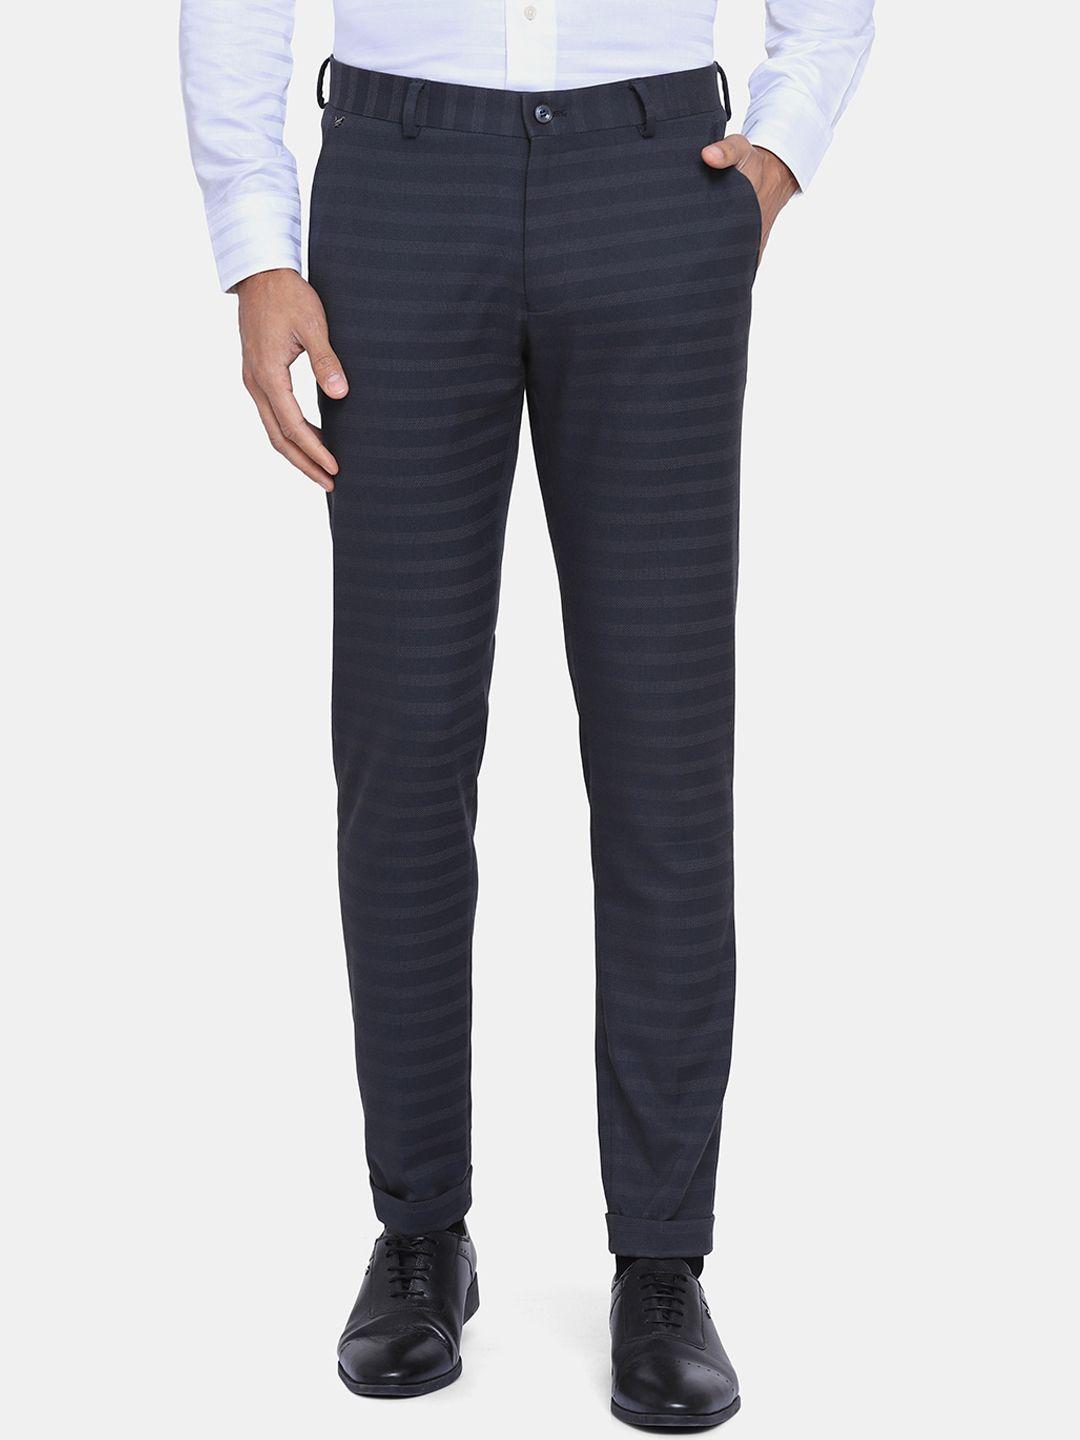 blackberrys-men-grey-striped-phoenix-skinny-fit-formal-trousers